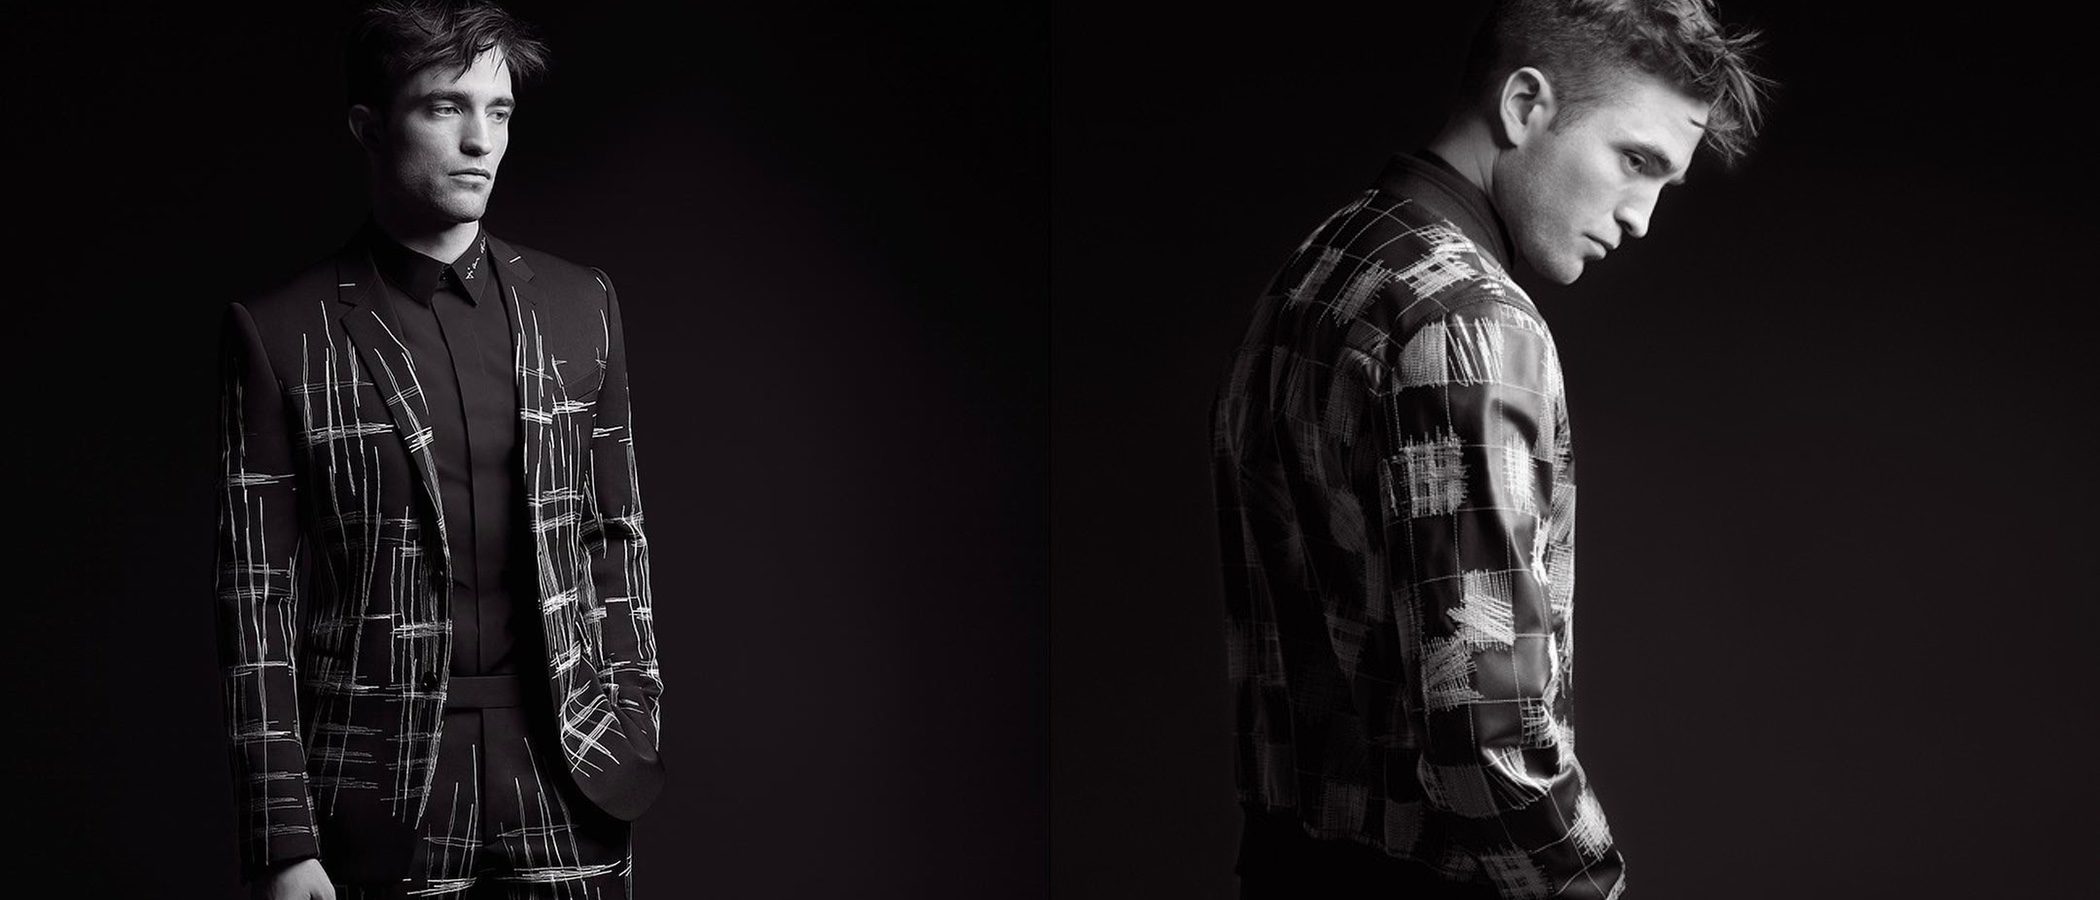 Robert Pattinson regresa a Dior Homme en su campaña para otoño 2017